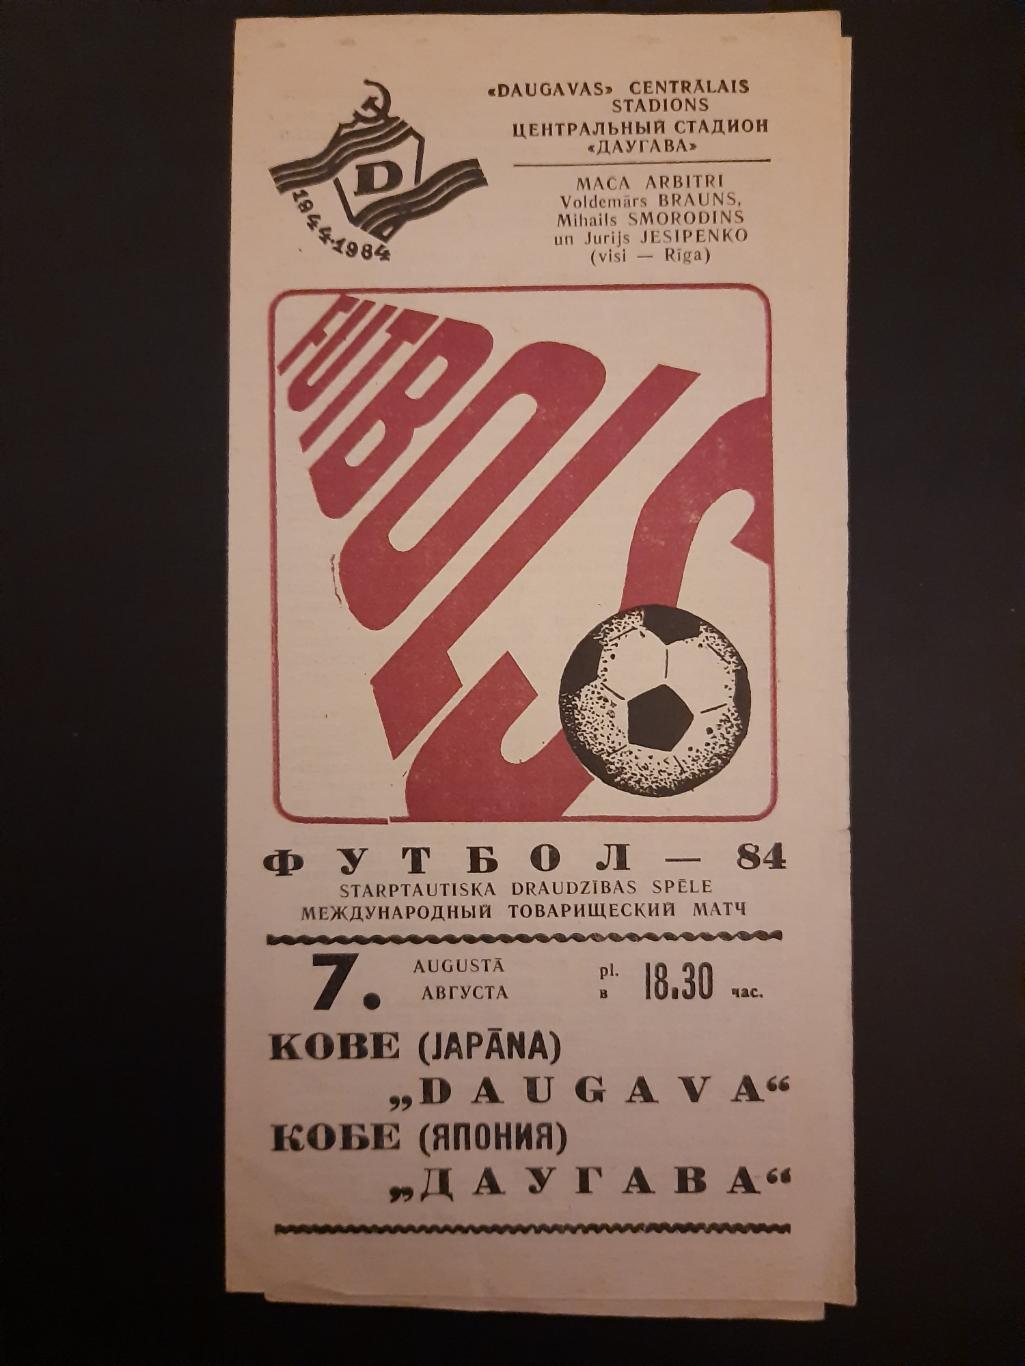 Даугава Рига - Кобе Япония 7.08.1984